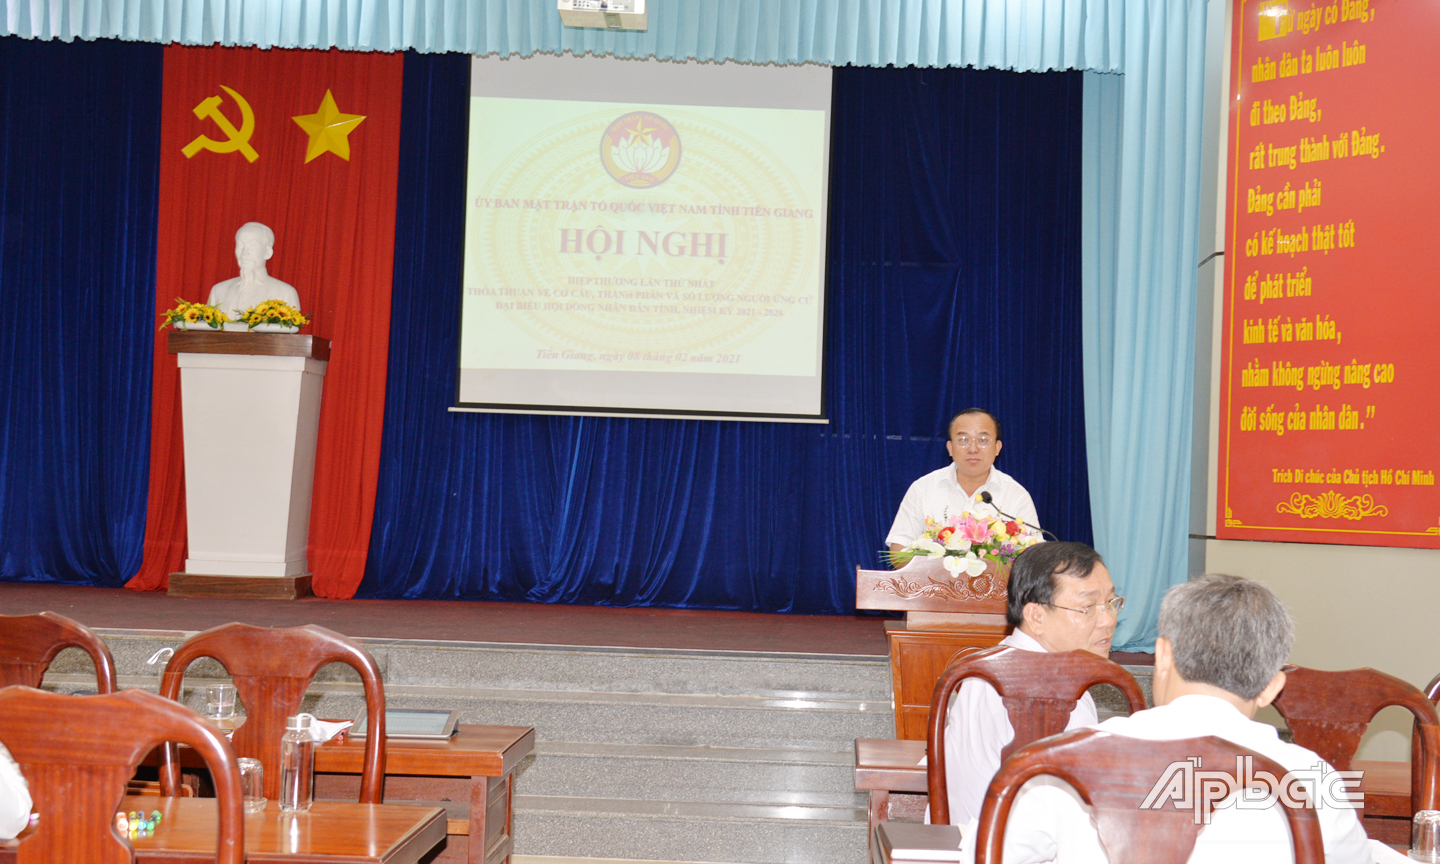 Đồng chí Nguyễn Chí Trung, Ủy viên Ban Thường vụ Tỉnh ủy, Chủ tịch Ủy ban MTTQ tỉnh phát biểu kết luận hội nghị